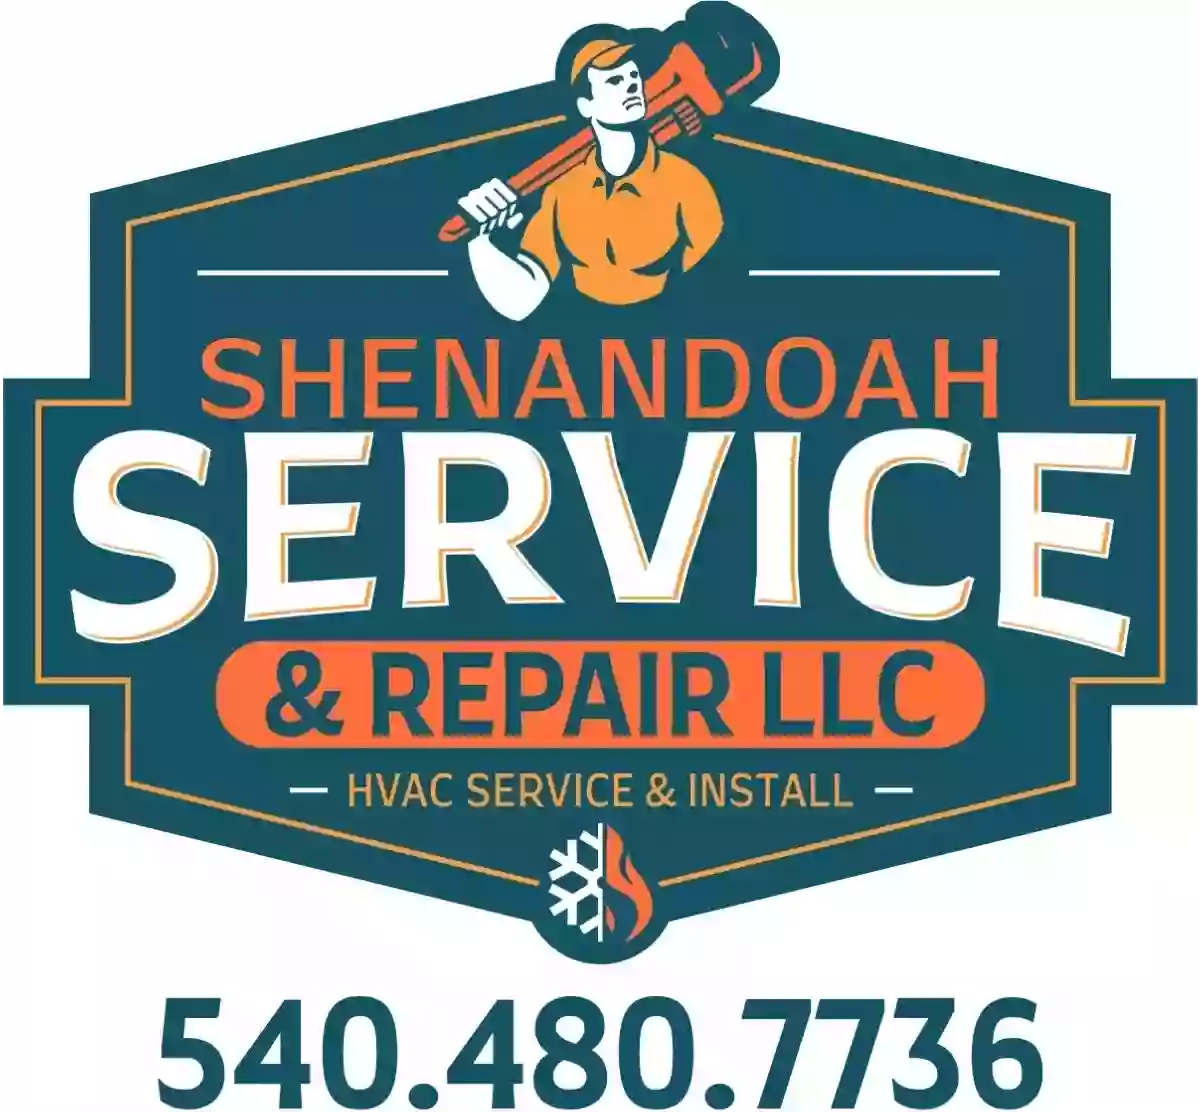 Shenandoah Service & Repair LLC